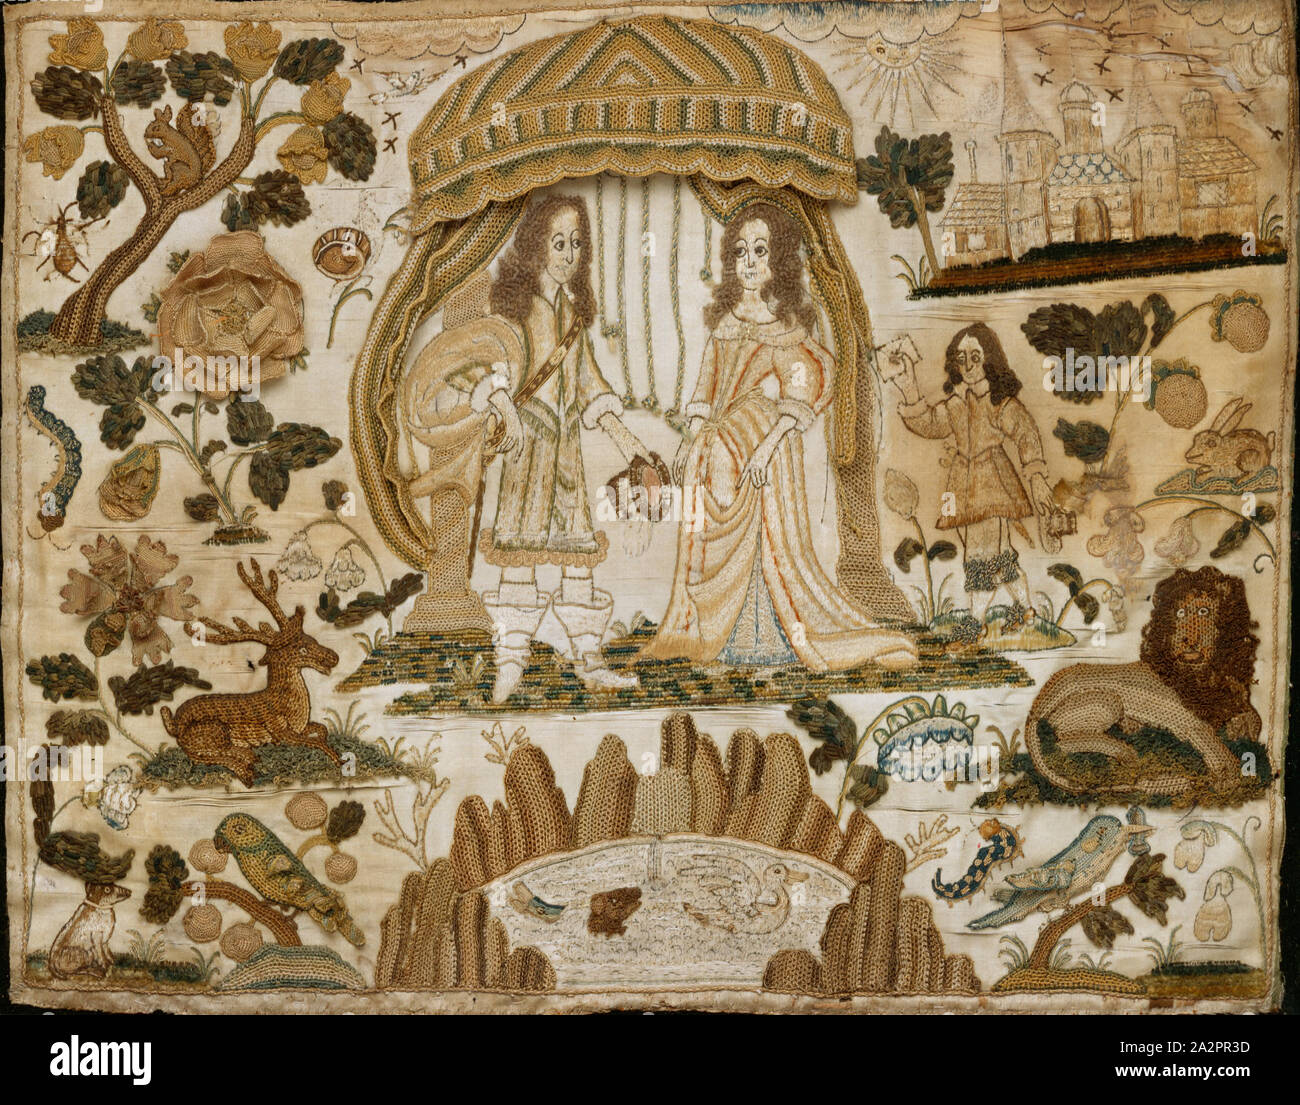 Inconnu (Anglais), Cavalier et dame dans une tente, 1650/1675, la soie de couleur argent doré et thread sur satin, Pans : 13 7/8 x 16 7/16 x 1 3/16 in. ( 35,3 x 41,8 x 3 cm Banque D'Images